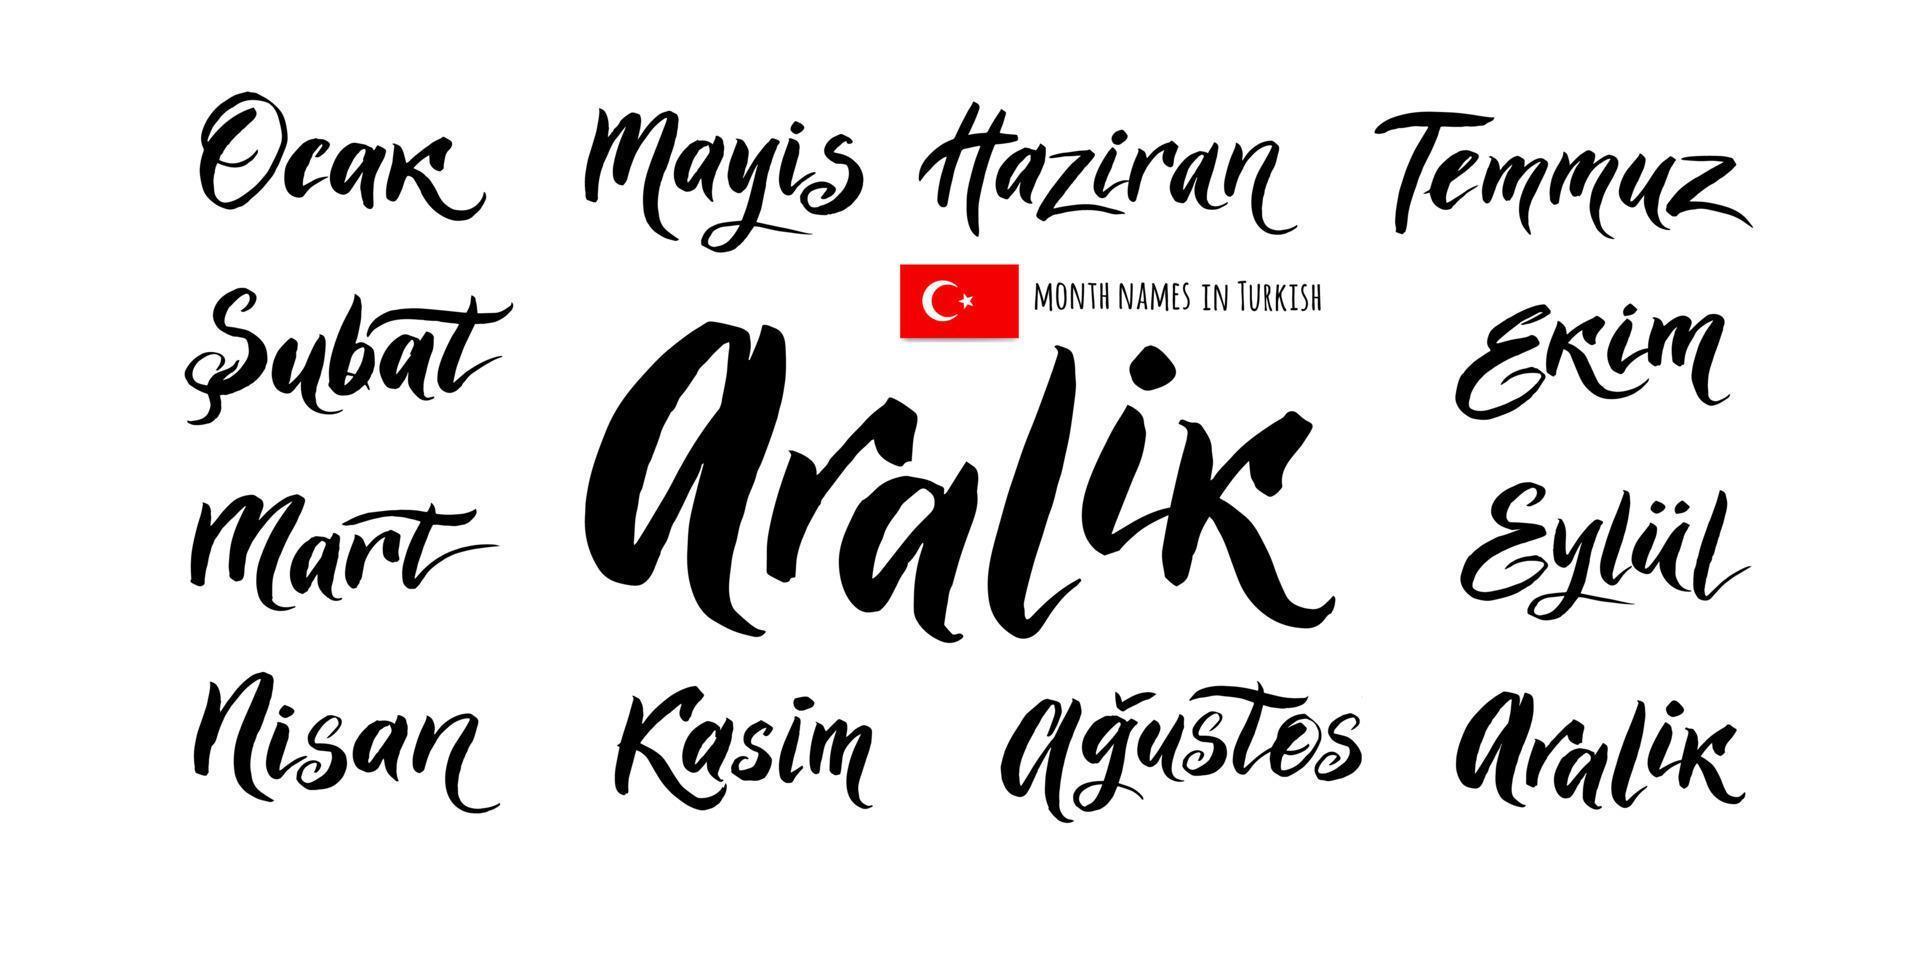 die handschriftlichen namen der monate auf türkisch. vektor